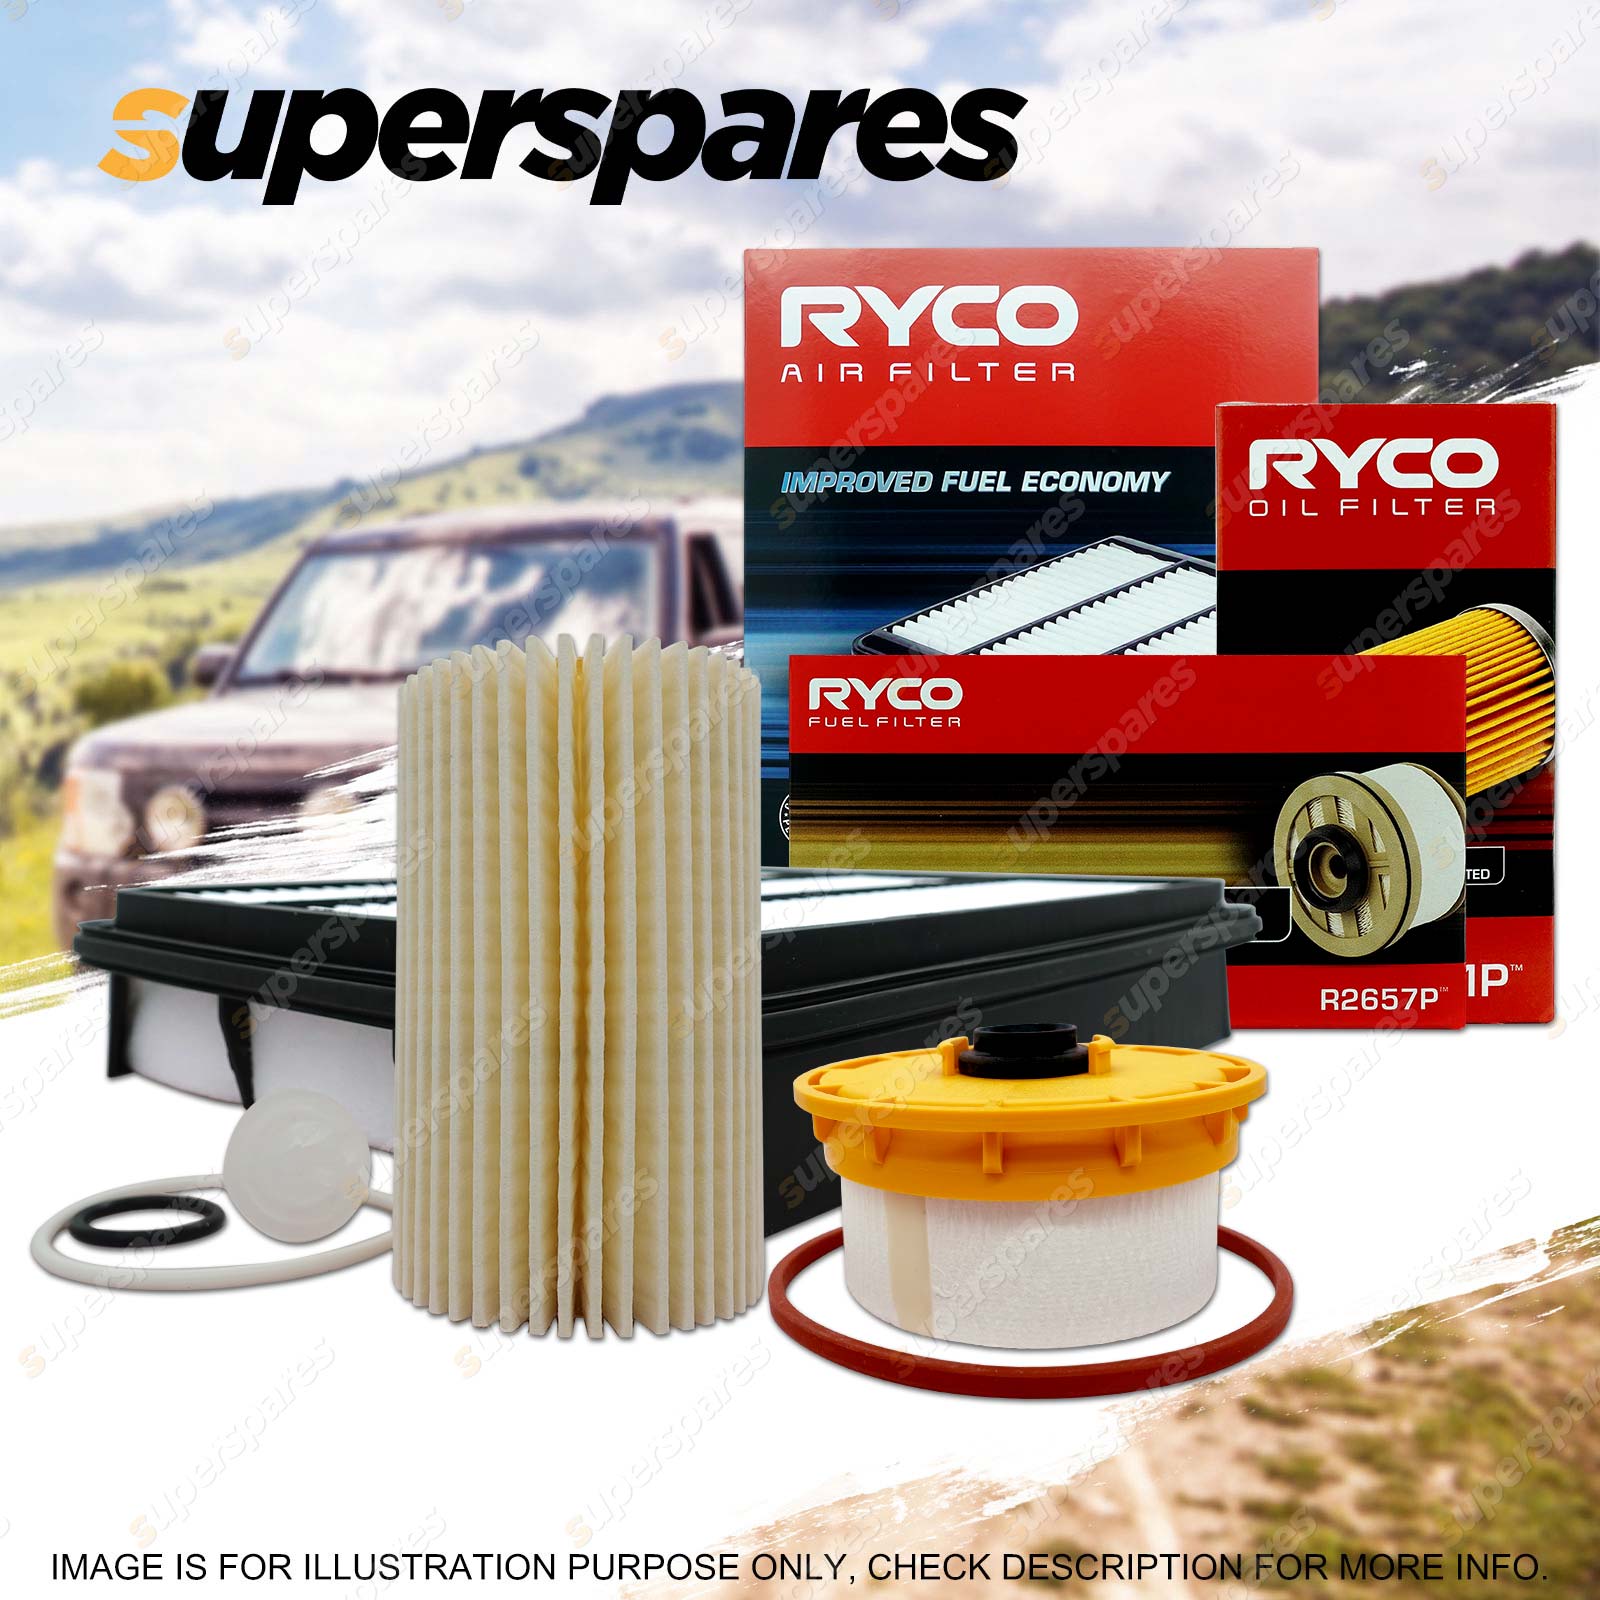 Ryco Oil Air Fuel Filter Service Kit for Toyota Landcruiser VDJ79 VDJ76